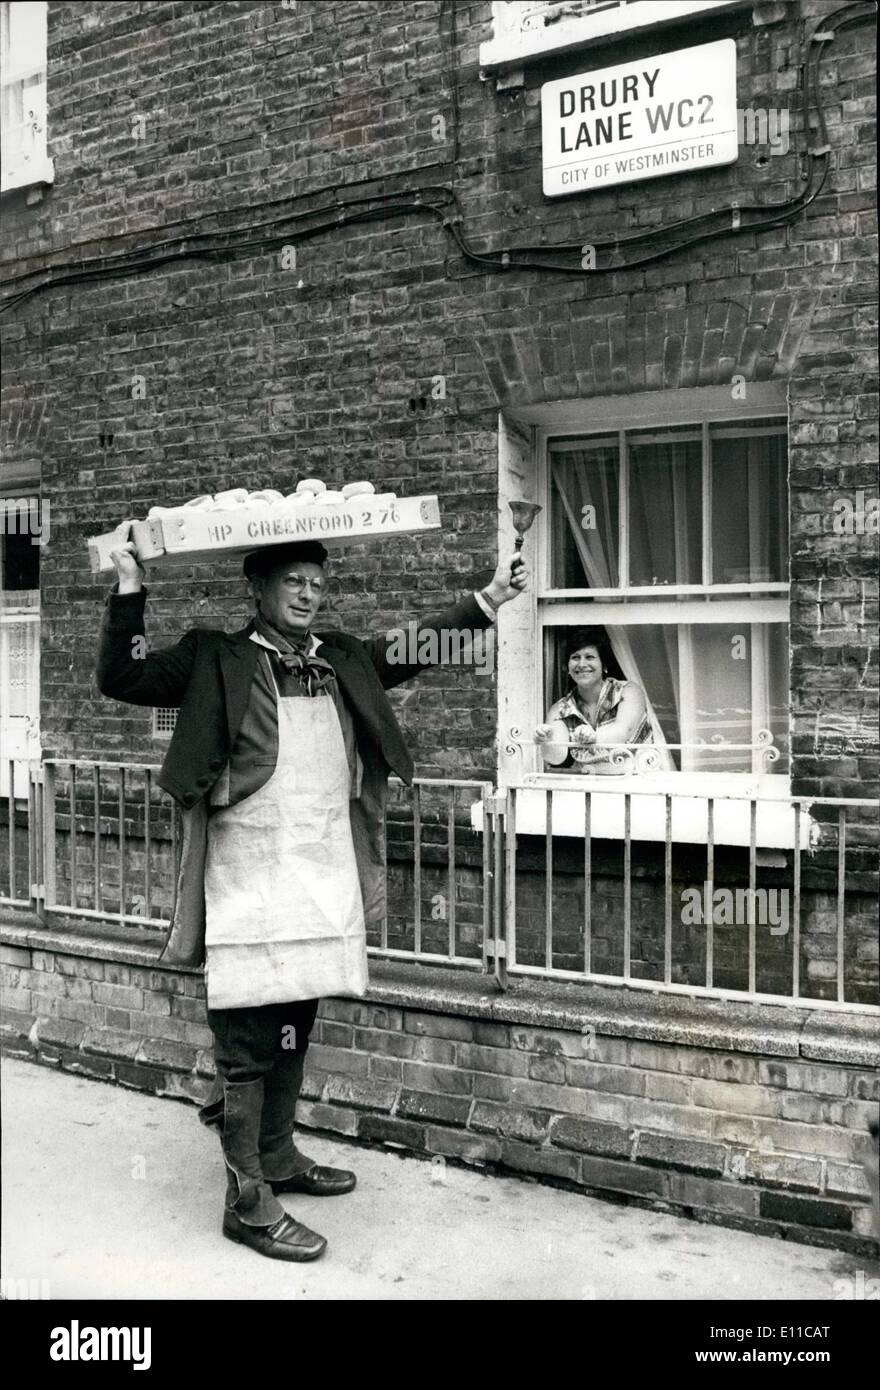 Sept. 09, 1976 - ein alter Brauch in London wird im Theatre Royal Drury Lane wiederbelebt: Rember der guten alten Zeit als Muffins "" in London Straßen hießen. Heute die '' Muffin Mann '' in authentischen Händler Kostüm gekleidet kam zurück, um Londons berühmten Drury Lane - das original '' Muffin-Lane - '' verfolgen oder der Reim so geht. Homepride Bäckereien, die ihren Sitz in Bury Lane haben, waren zum Start der diesjährigen Muffin-Saison (von Oktober bis März) mit einem Muffin-Mann klingelt sein Handball und singen seine leckere waren in der Säulenhalle des berühmten Brury Lane Theaters läutet. Stockfoto